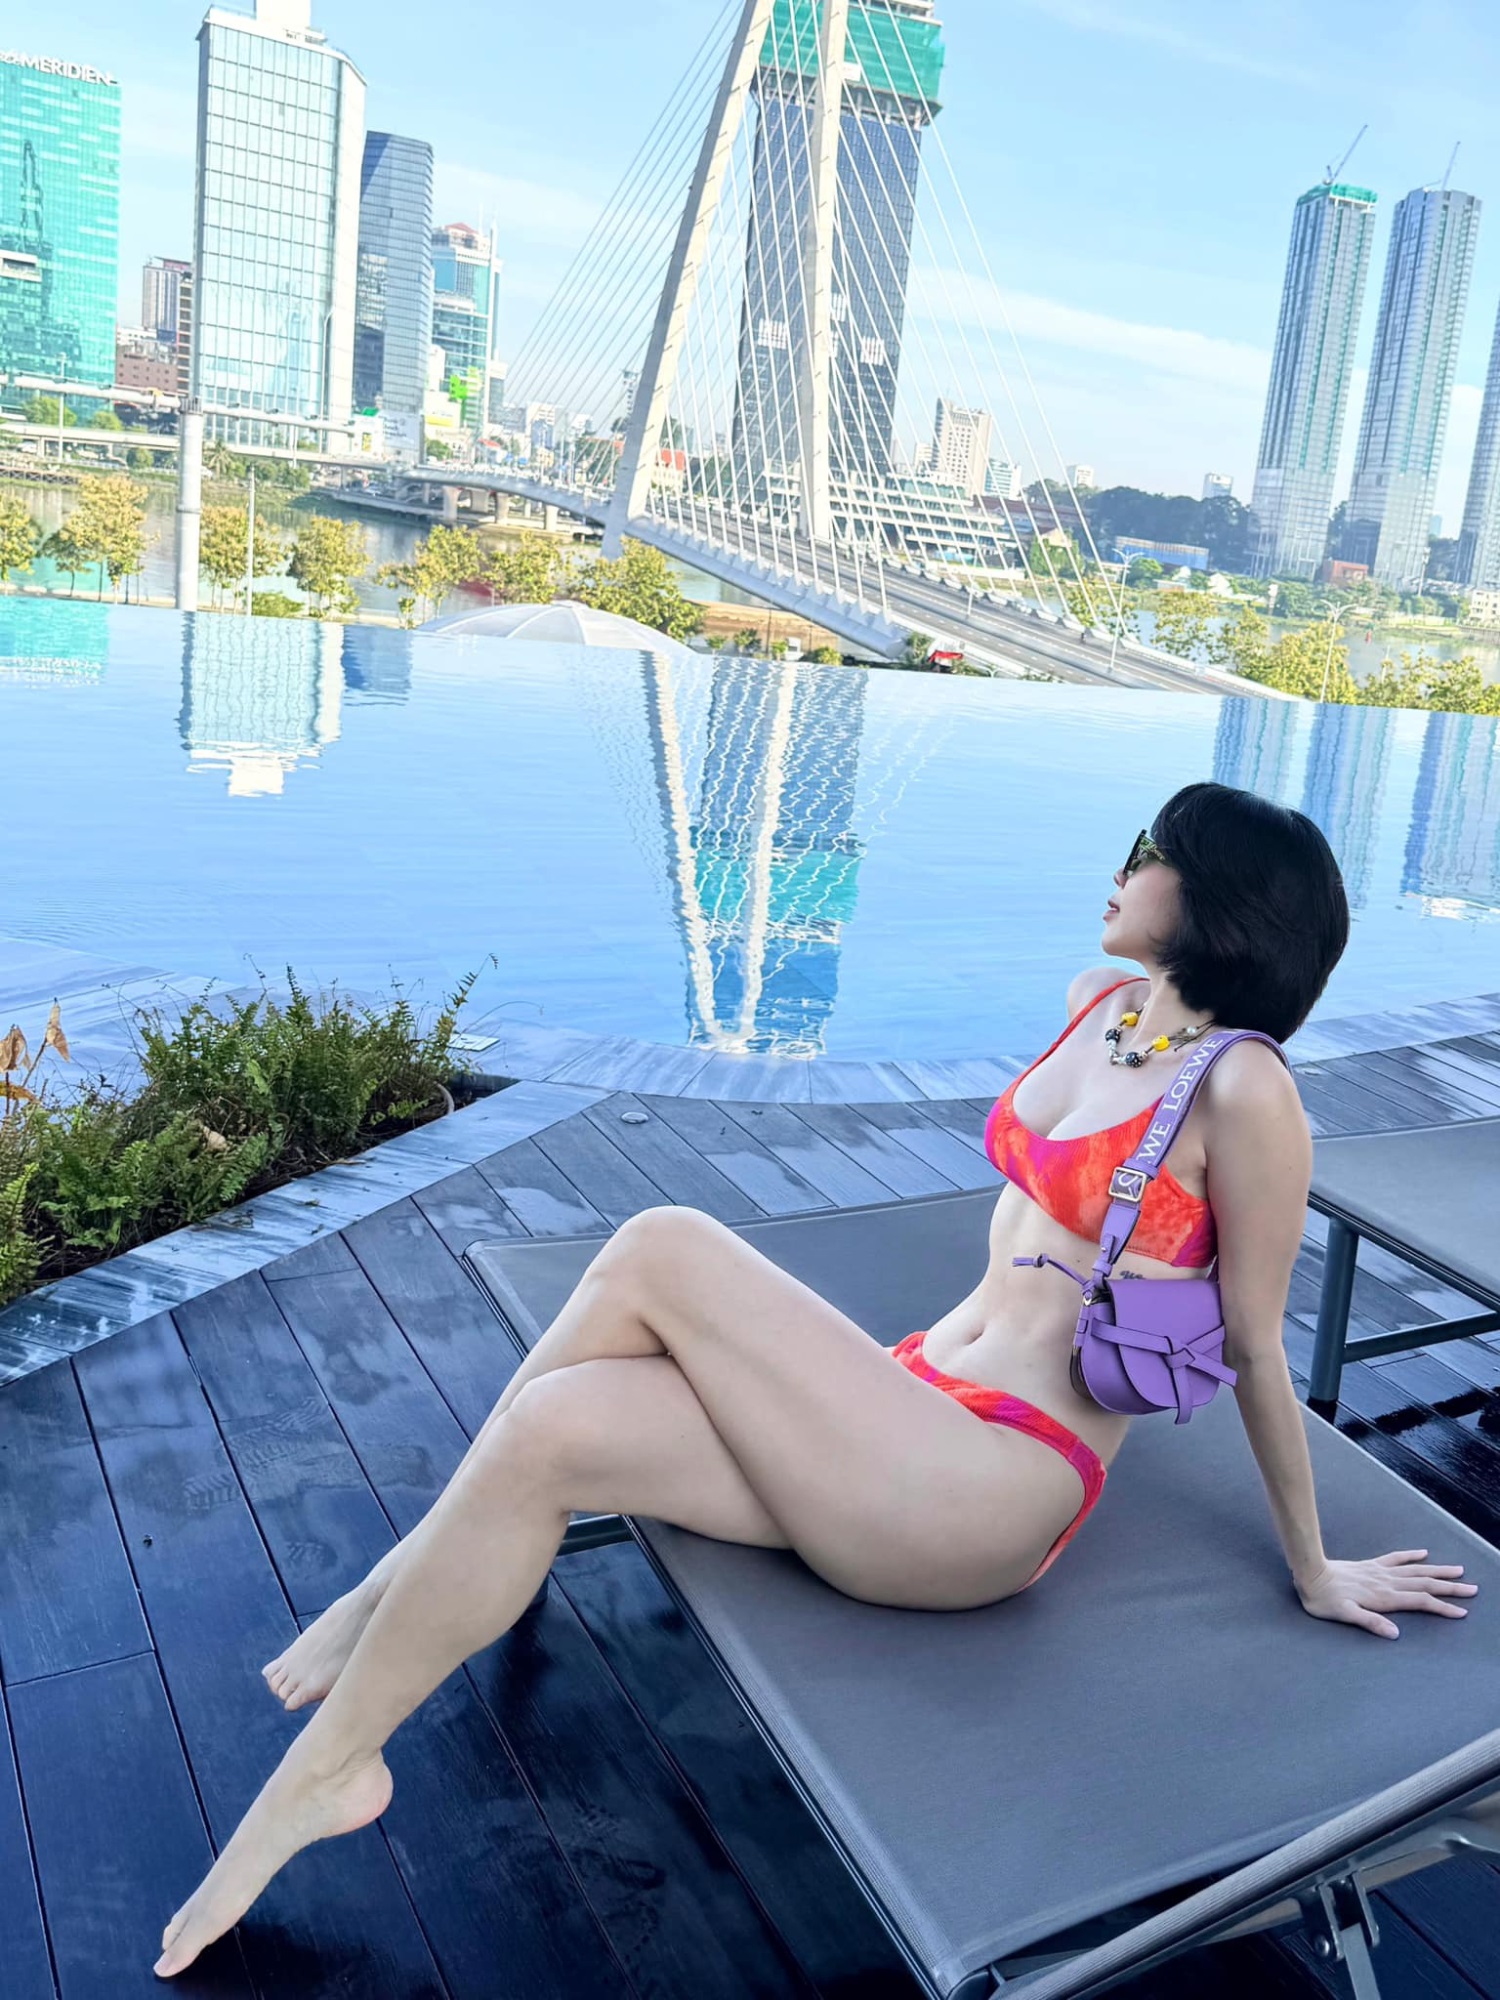 Cưới đại gia ngầm trong showbiz, ca sĩ Tóc Tiên chăm diện bikini siêu nhỏ, khoe vóc dáng nuột nà ở tuổi U40 - Ảnh 5